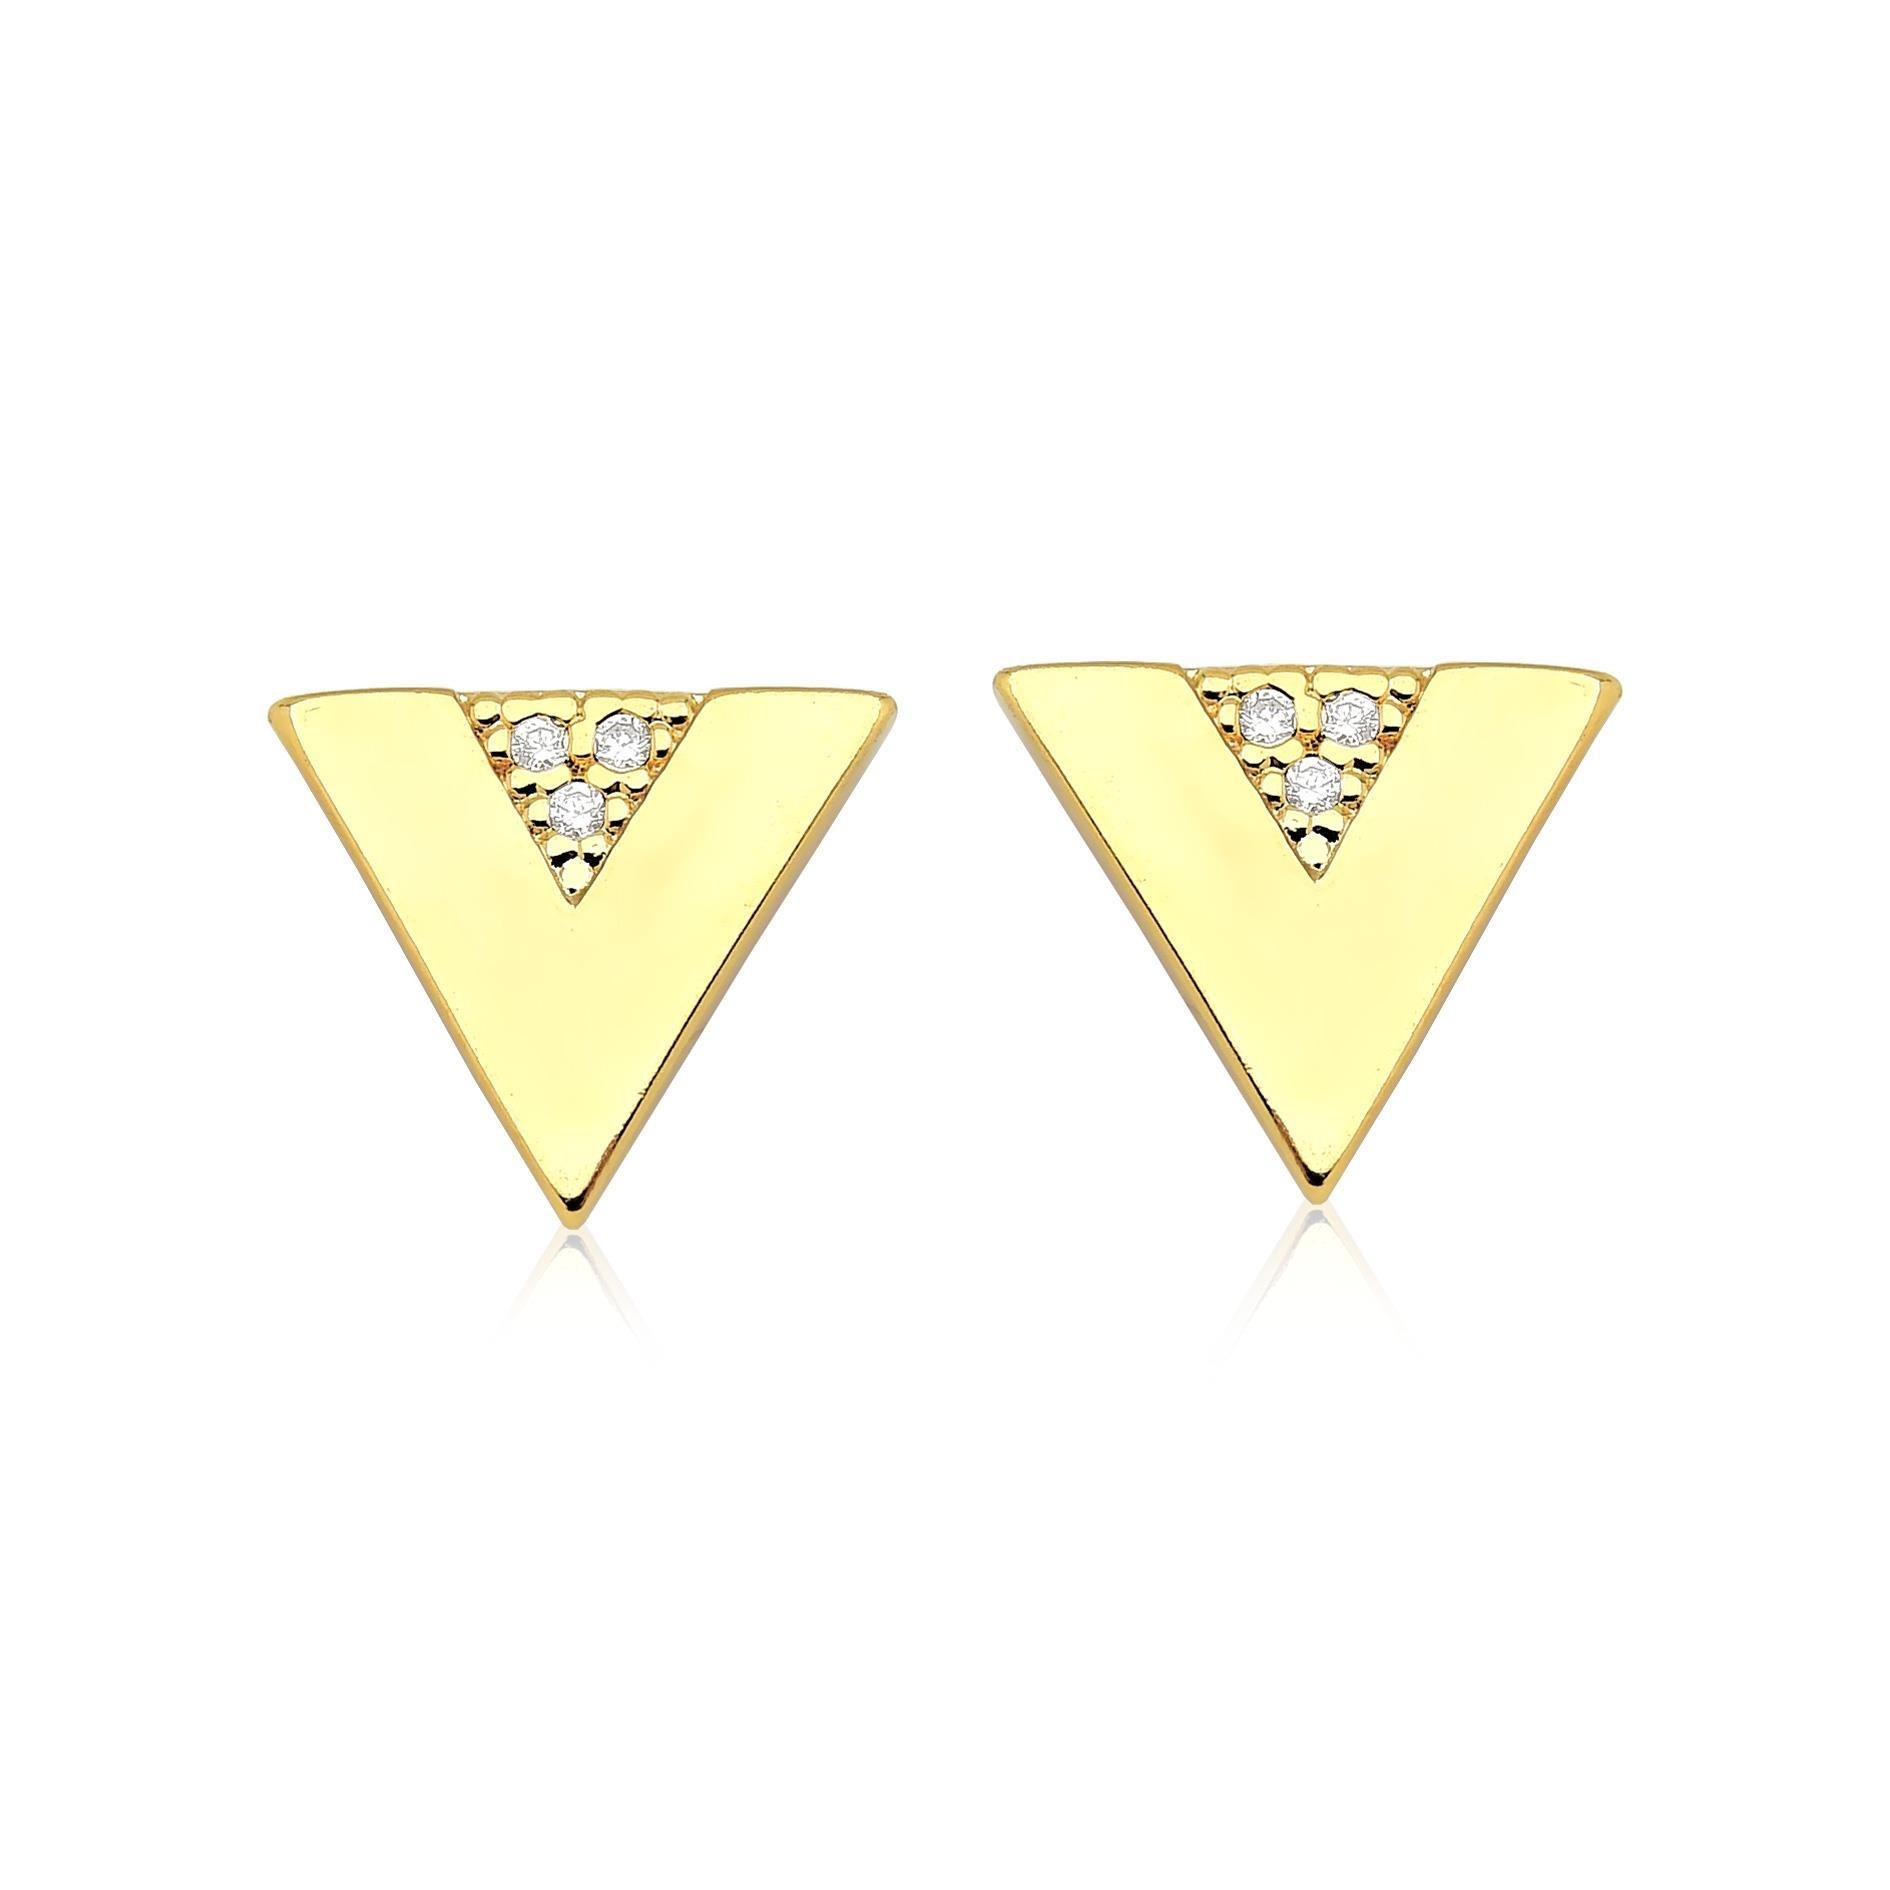 Brinco inspired triangular cravejado com zirconias folheado a ouro 18k p